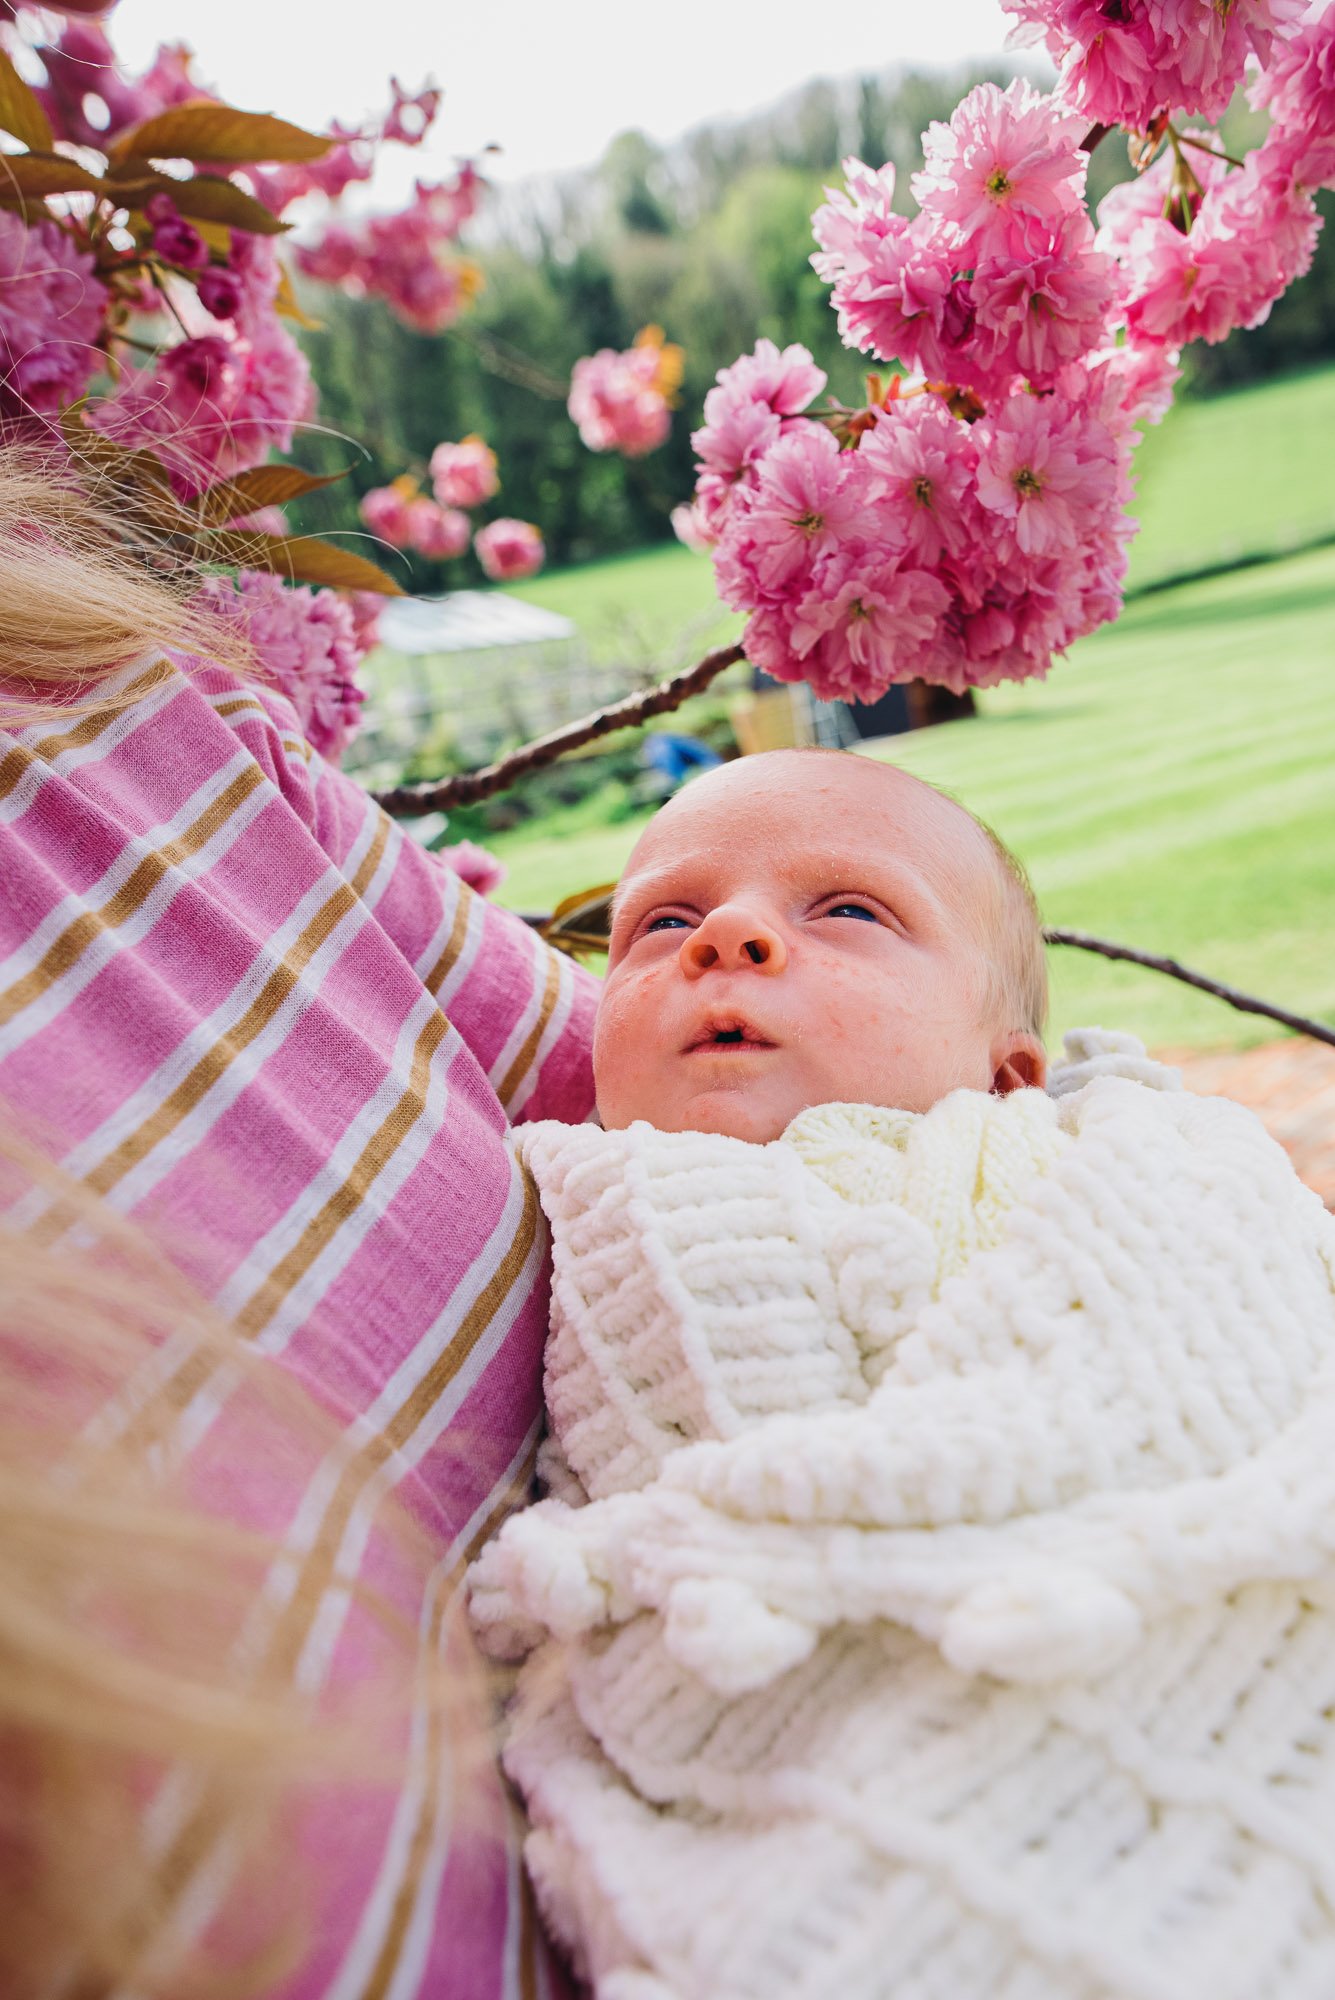 newborn-baby-portrait-blossom-in-garden-mum-holding-baby-boy.jpg